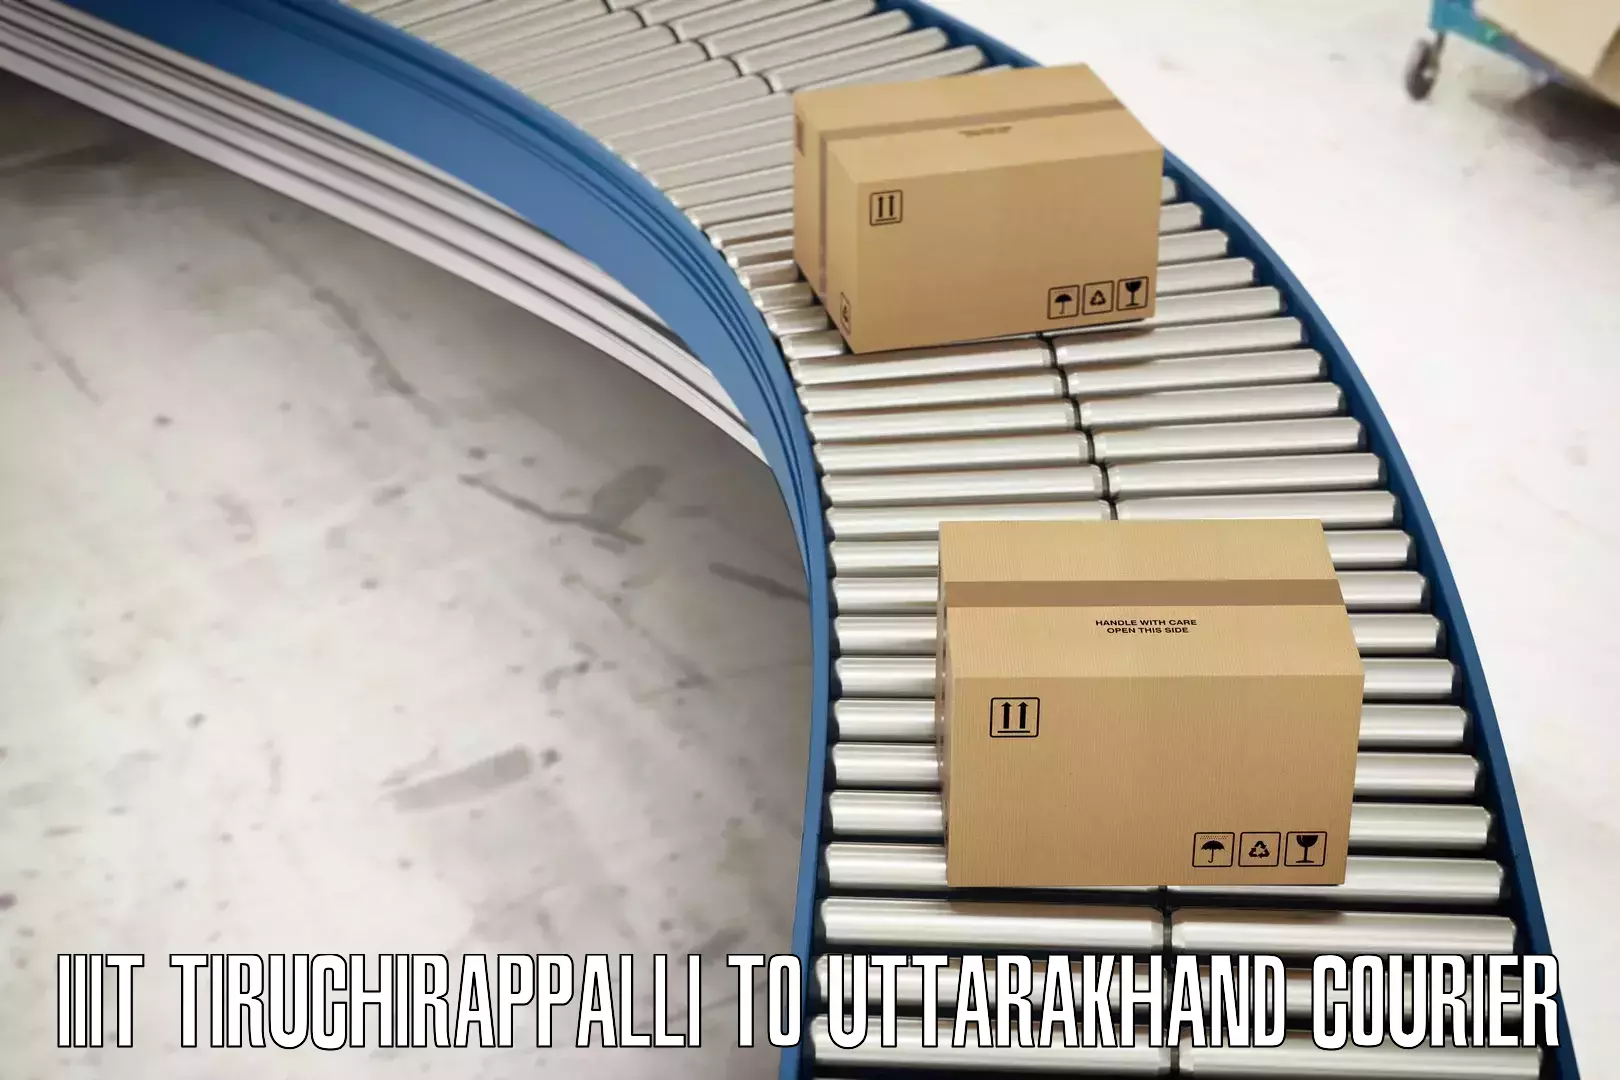 High-capacity parcel service IIIT Tiruchirappalli to Paithani